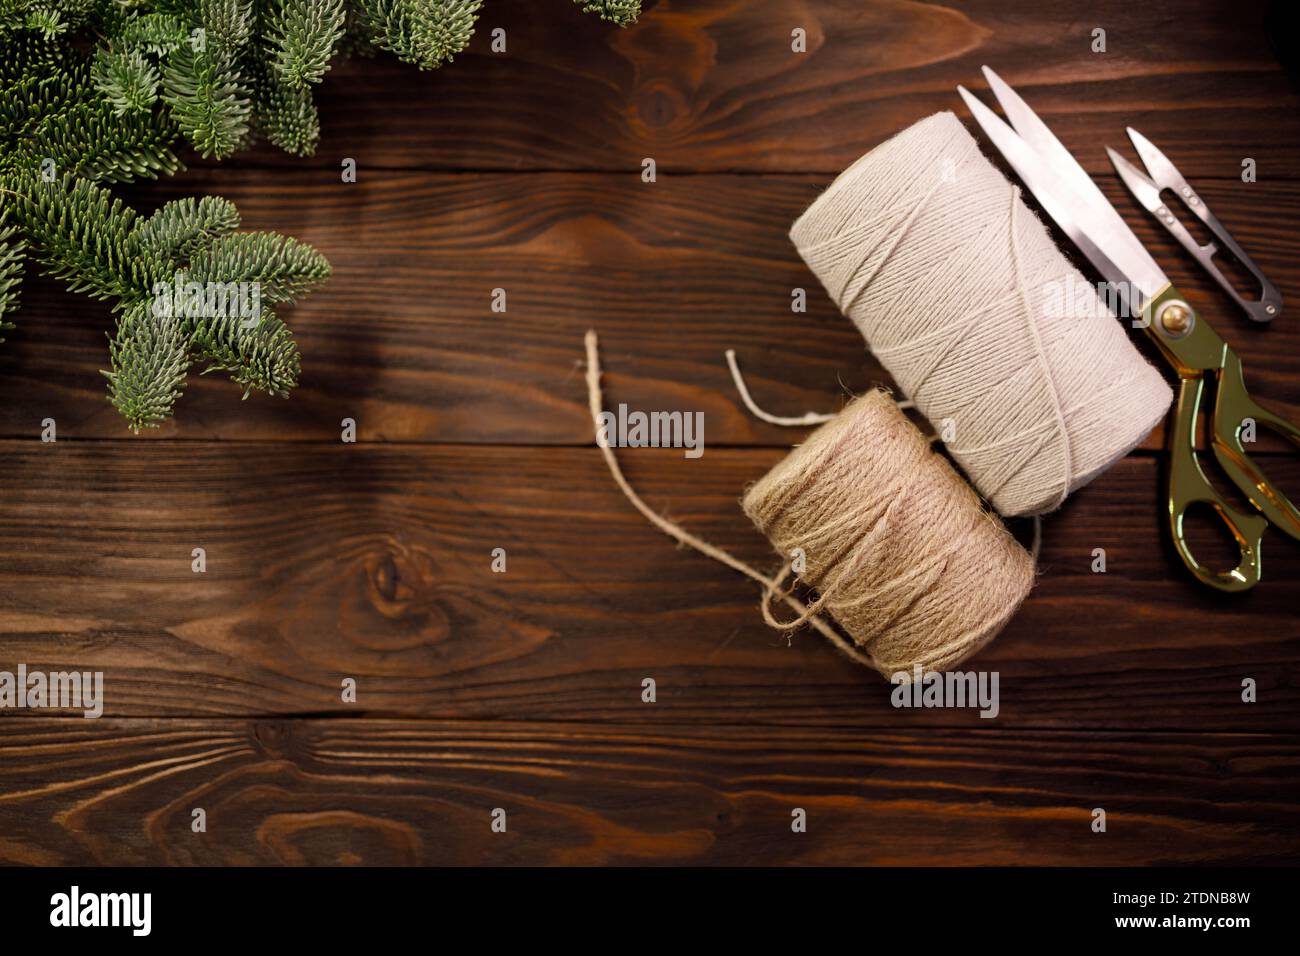 ciseaux, corde de coton torsadée et corde de toile de jute sur une table en bois décorée de branches d'épicéa Banque D'Images